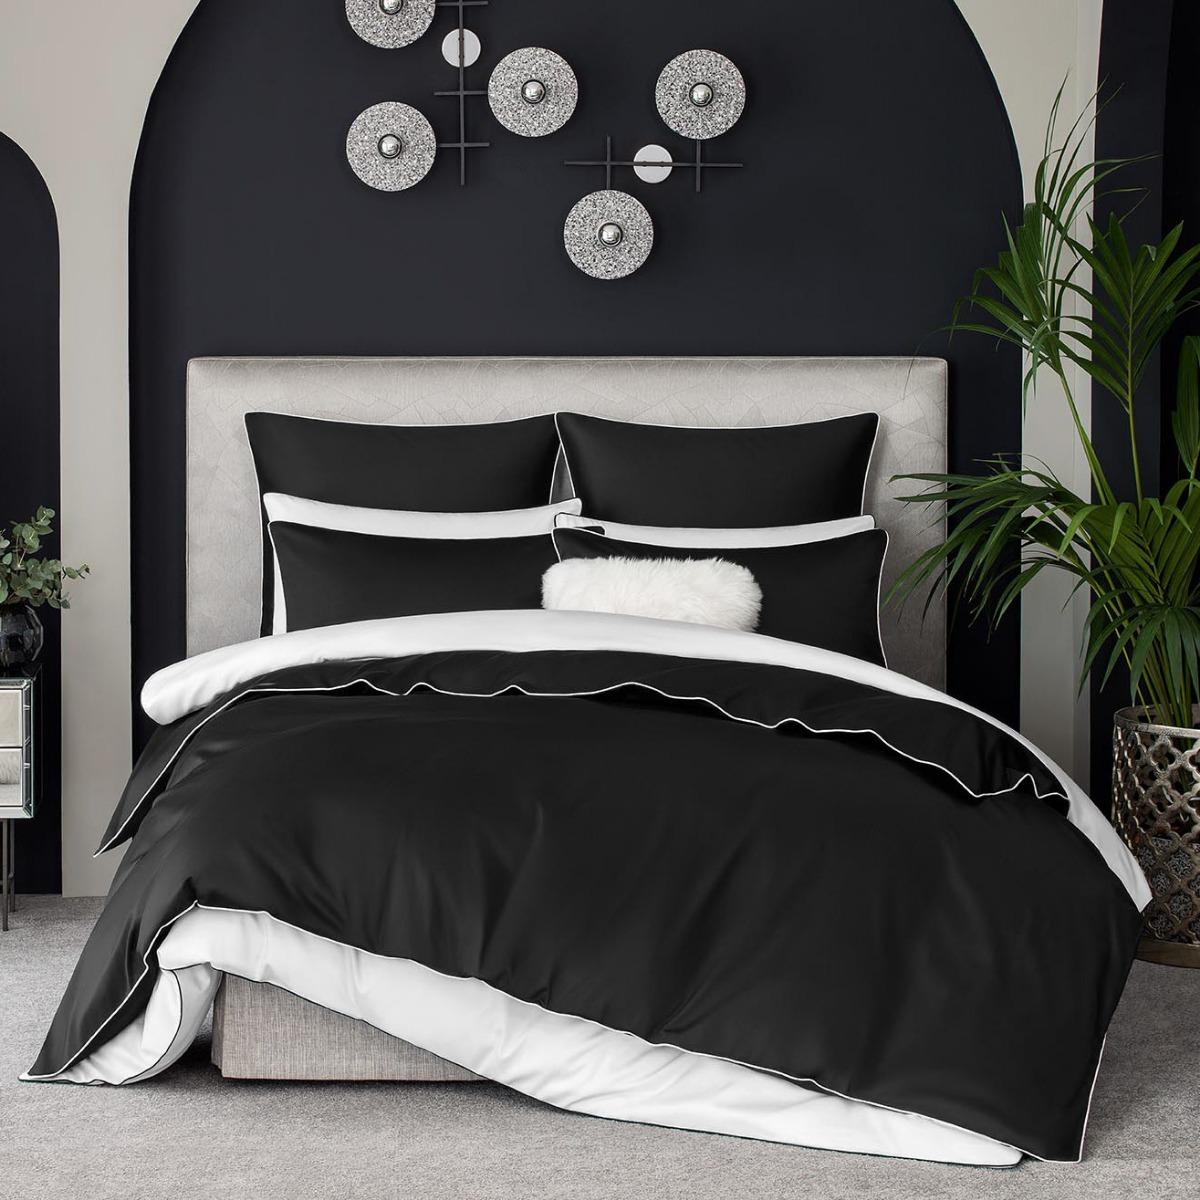 Комплект постельного белья Togas Клэрити чёрный с белым Кинг сайз реснички набор 2 шт размер 1 шт 20 × 1 см чёрный